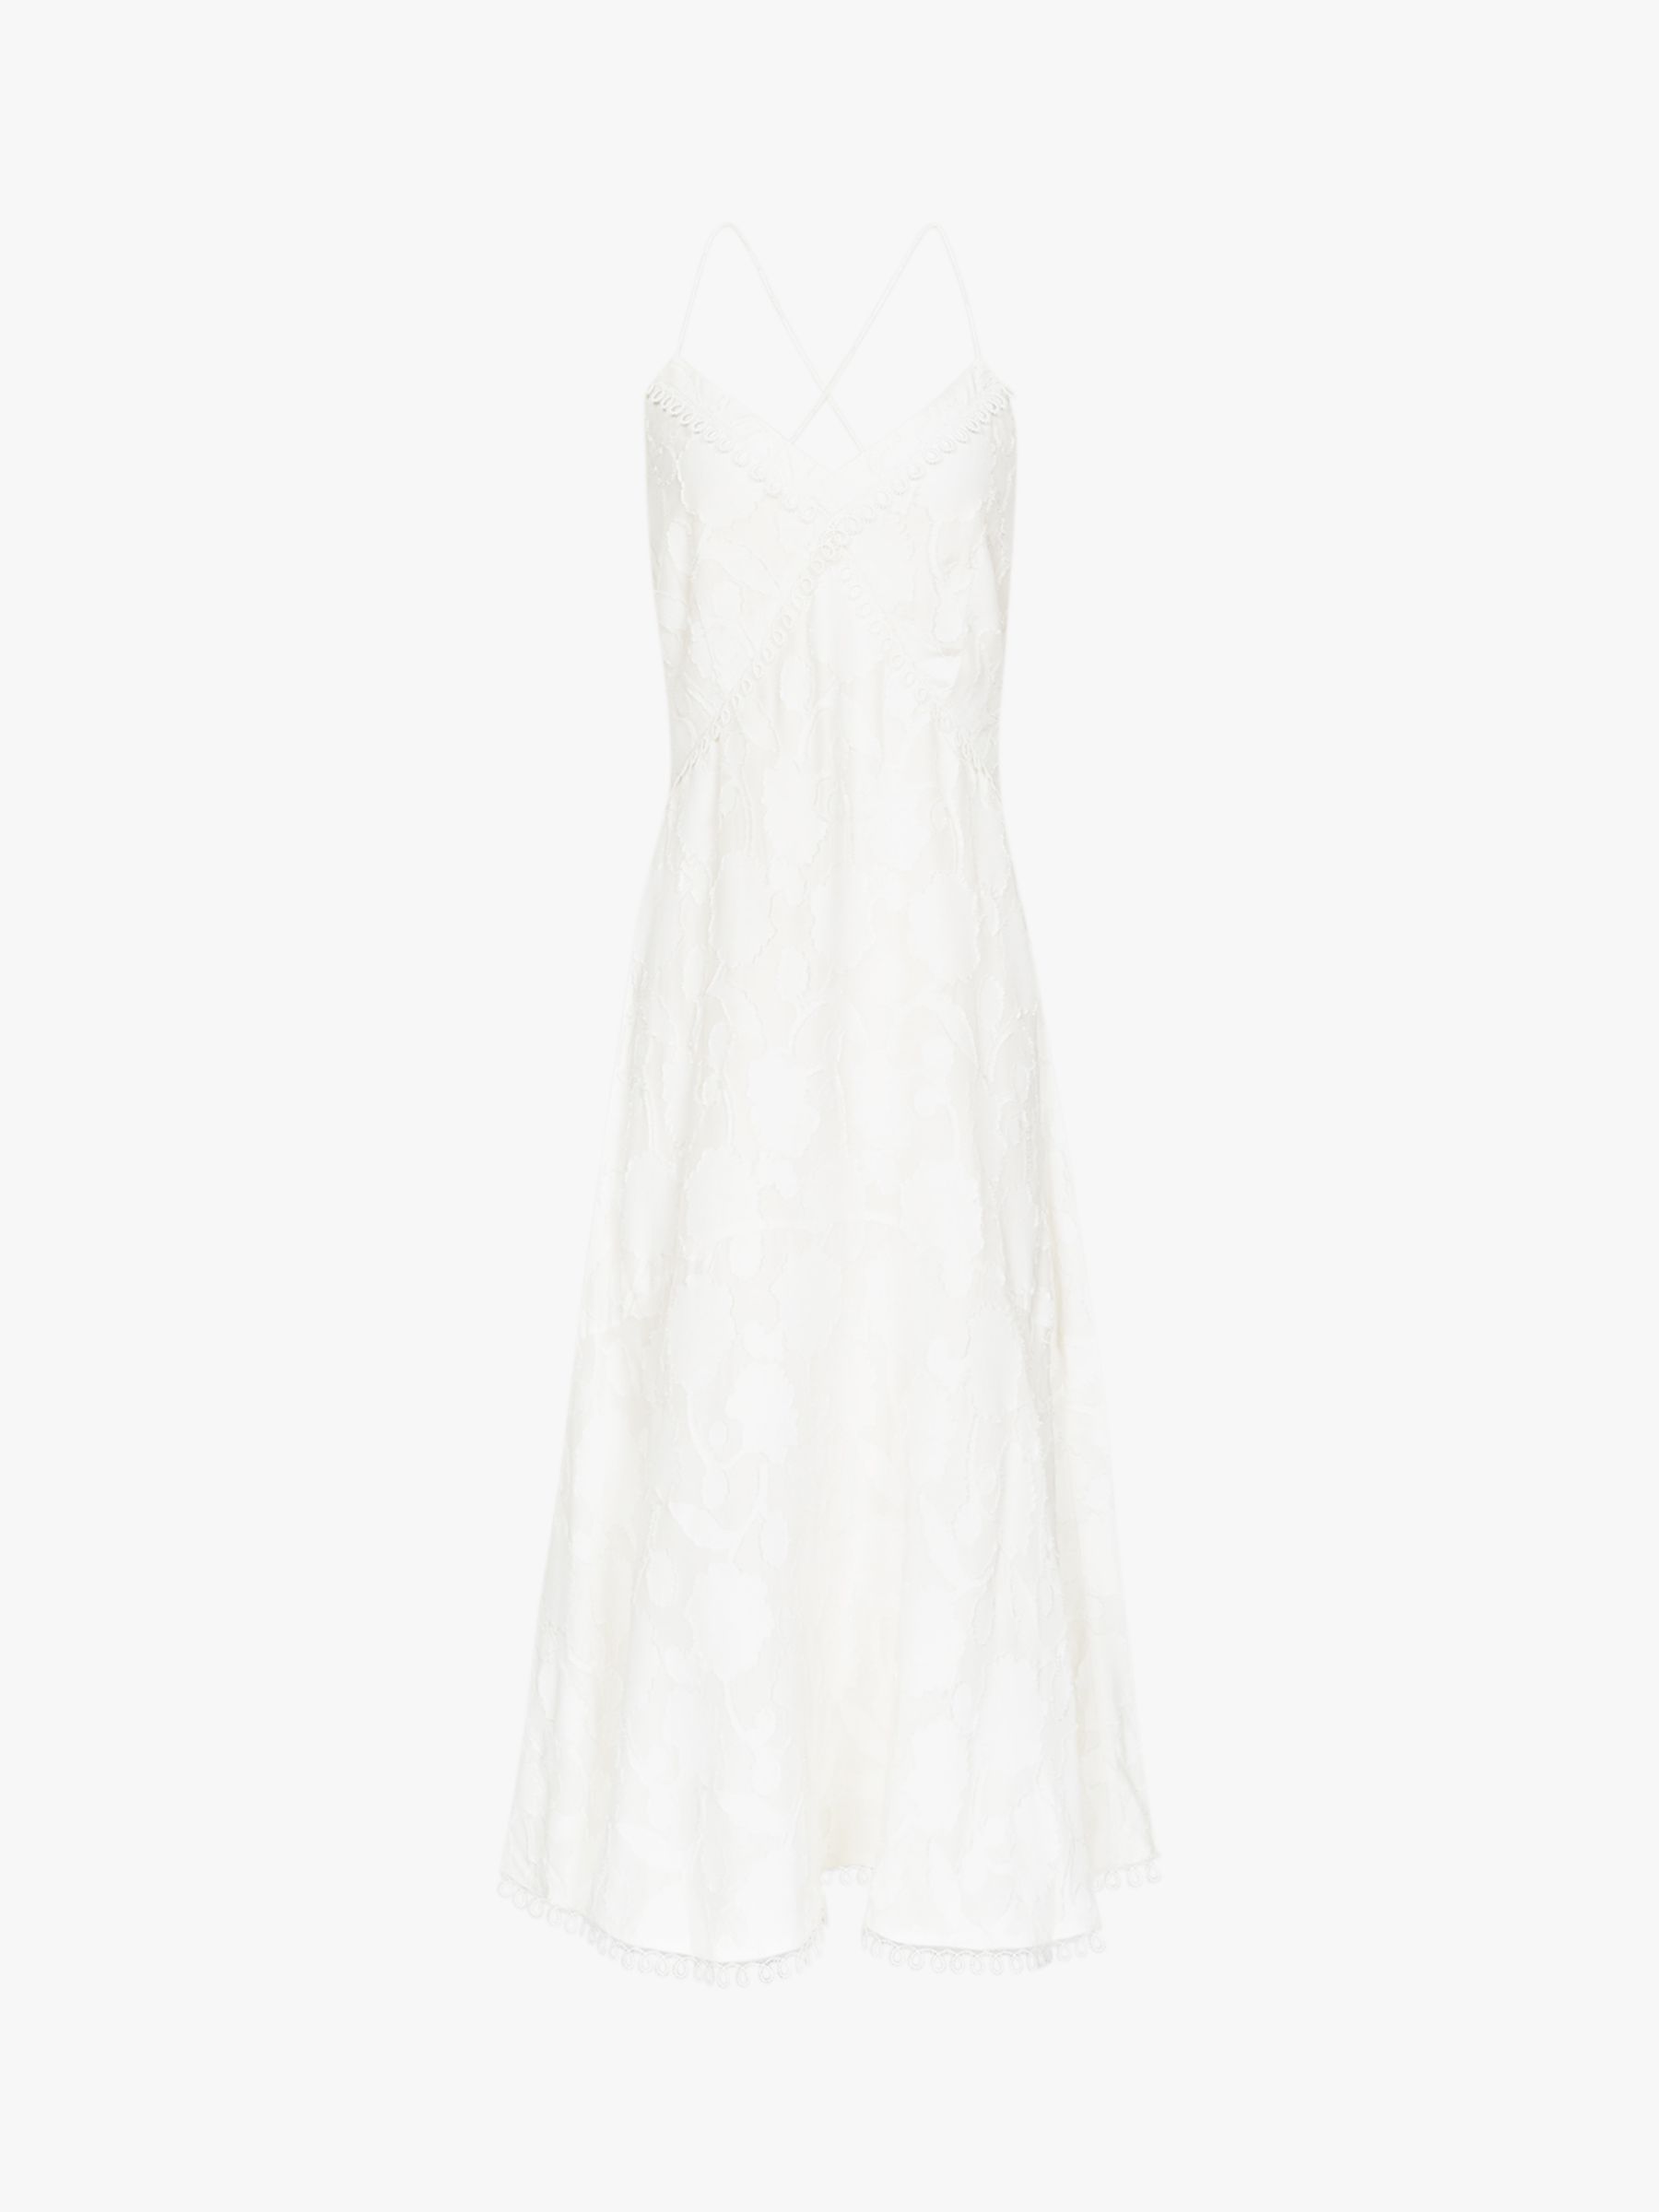 Reiss Ania Textured Strappy Dress, White